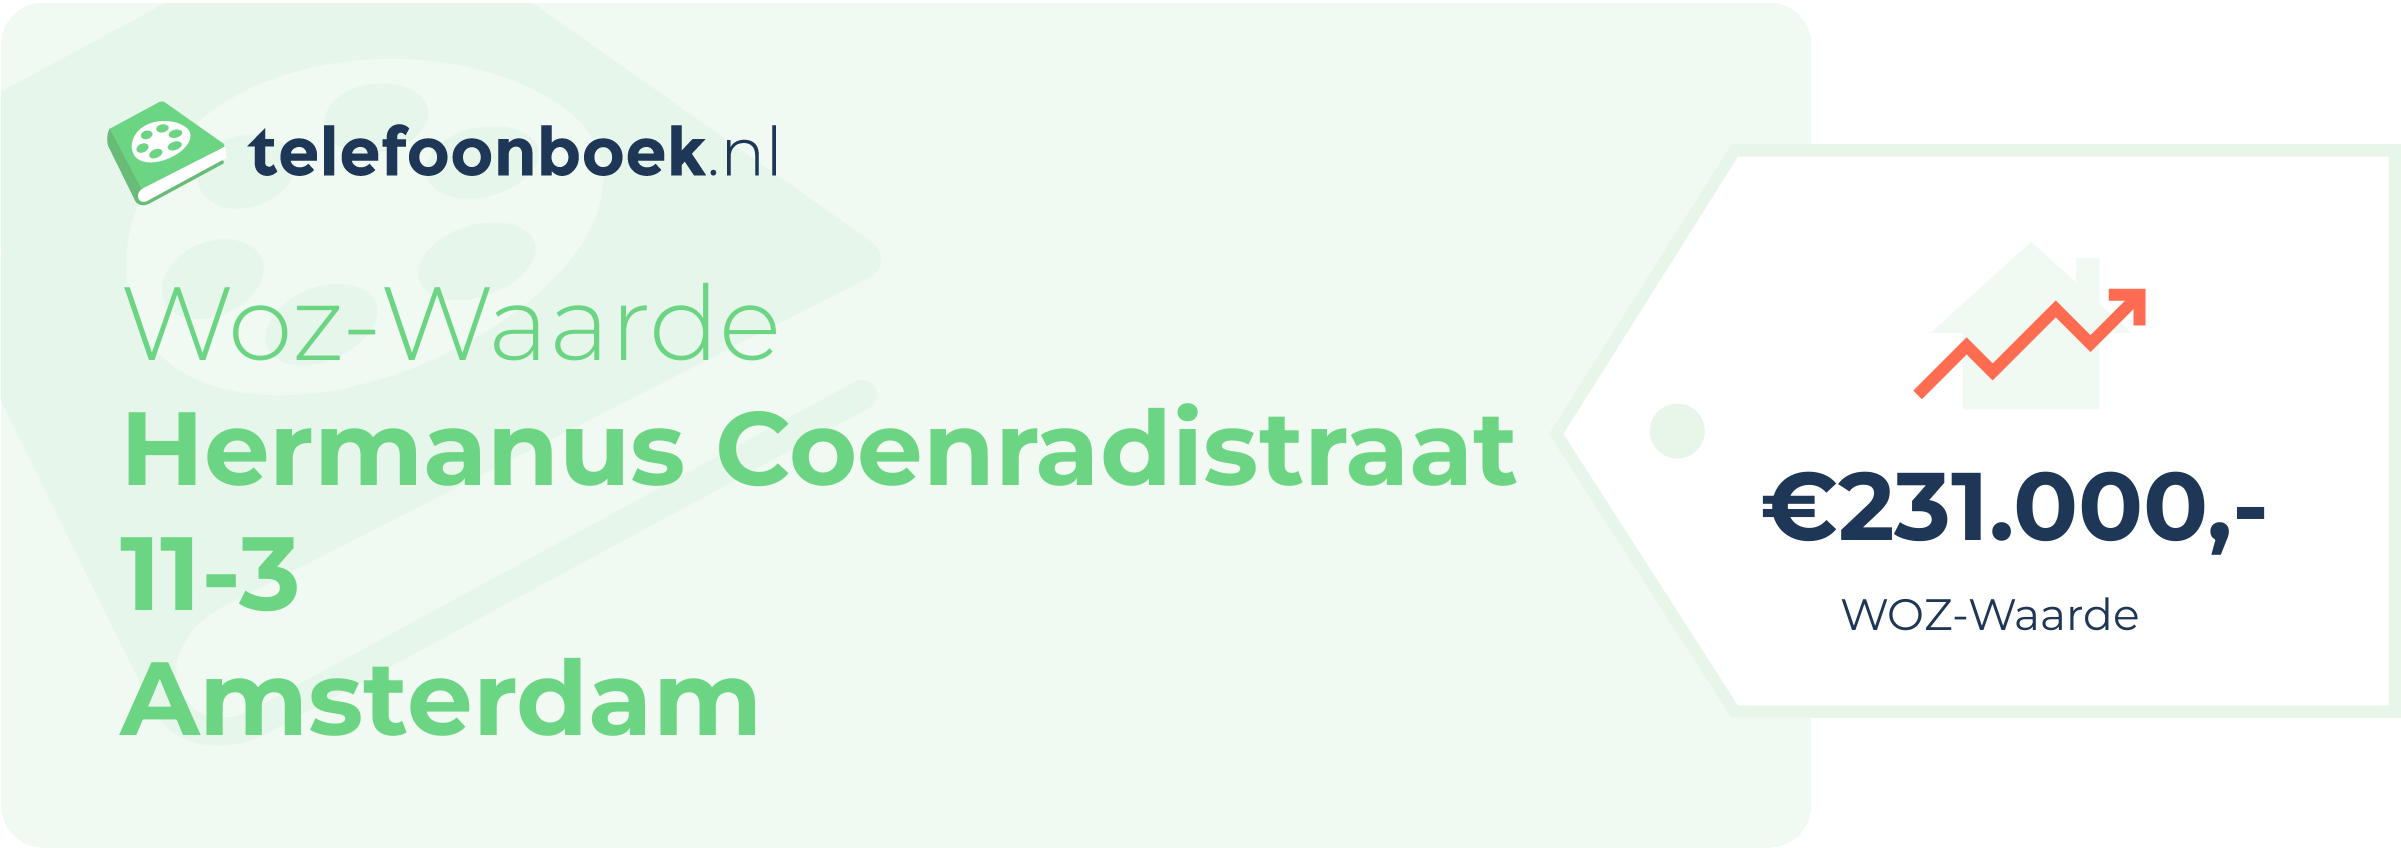 WOZ-waarde Hermanus Coenradistraat 11-3 Amsterdam